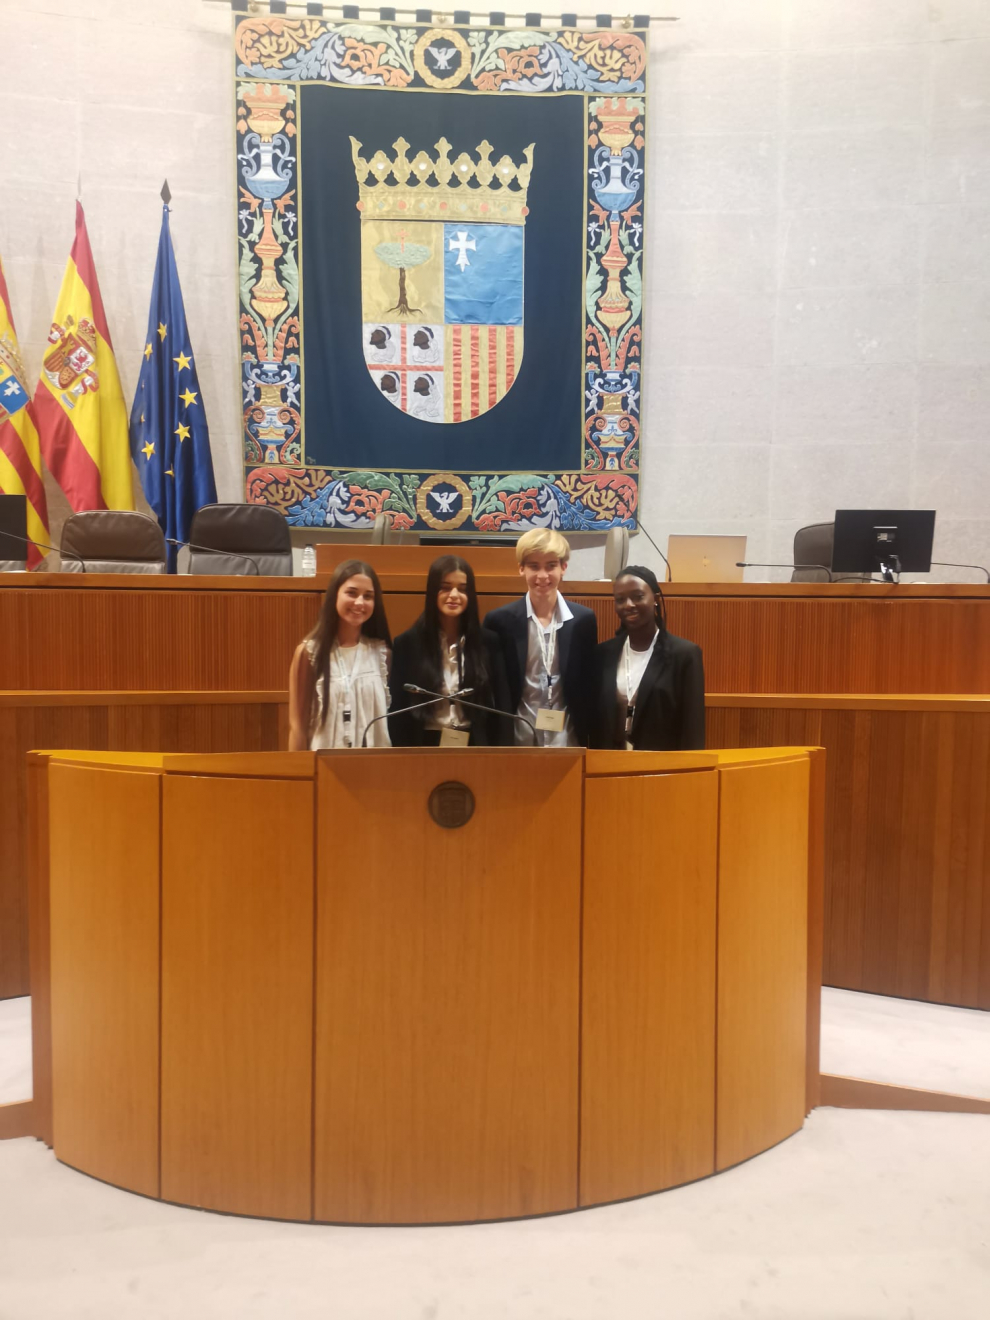 El foro se celebró en Zaragoza y dos de ellos expusieron las conclusiones del debate ante 27 ministros de Educación de la Unión Europea, entre ellos, Pilar Alegría.